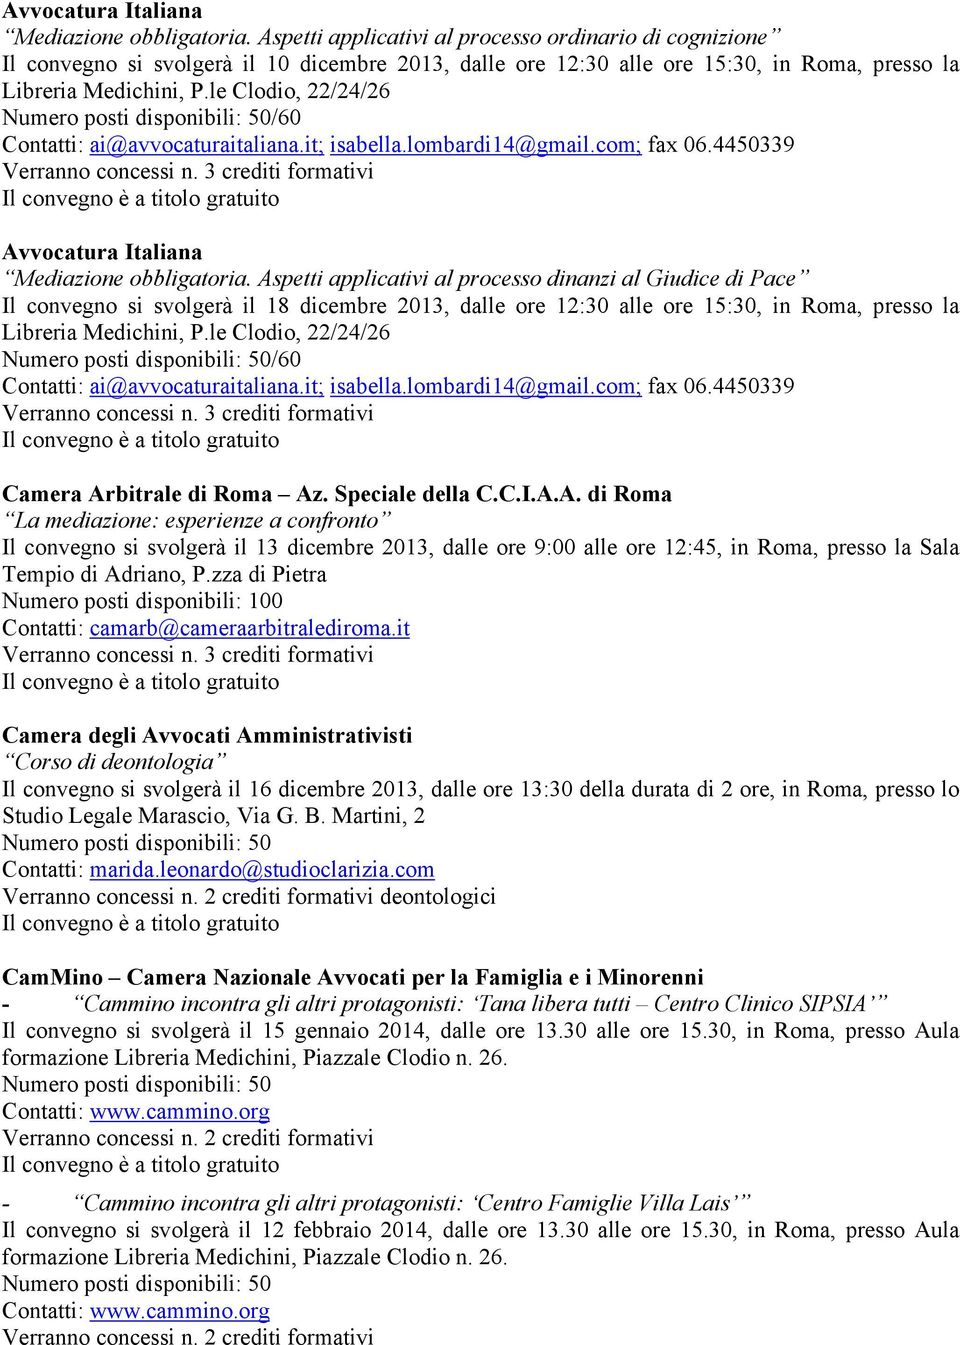 le Clodio, 22/24/26 /60 Contatti: ai@avvocaturaitaliana.it; isabella.lombardi14@gmail.com; fax 06.